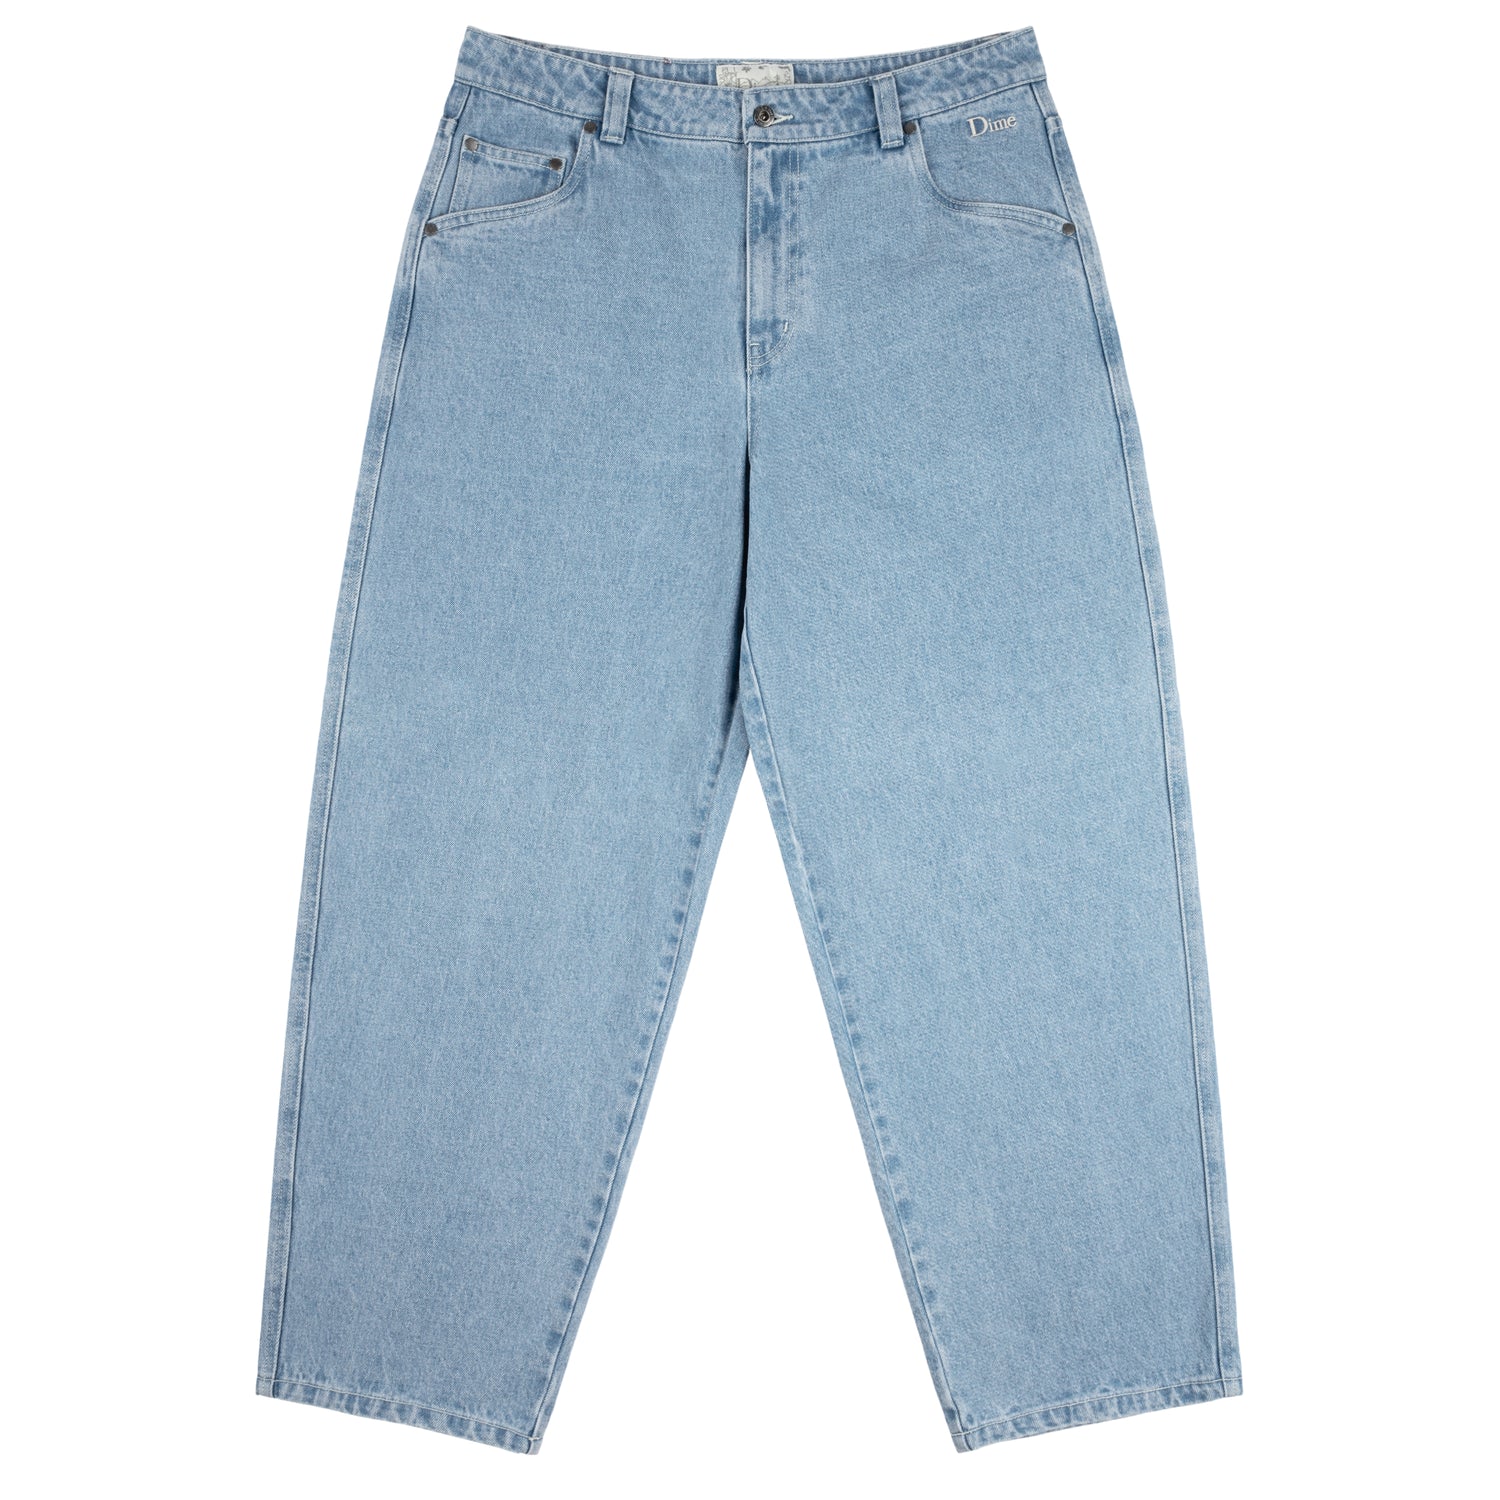 Classic Baggy Denim Jeans, Vintage Blue